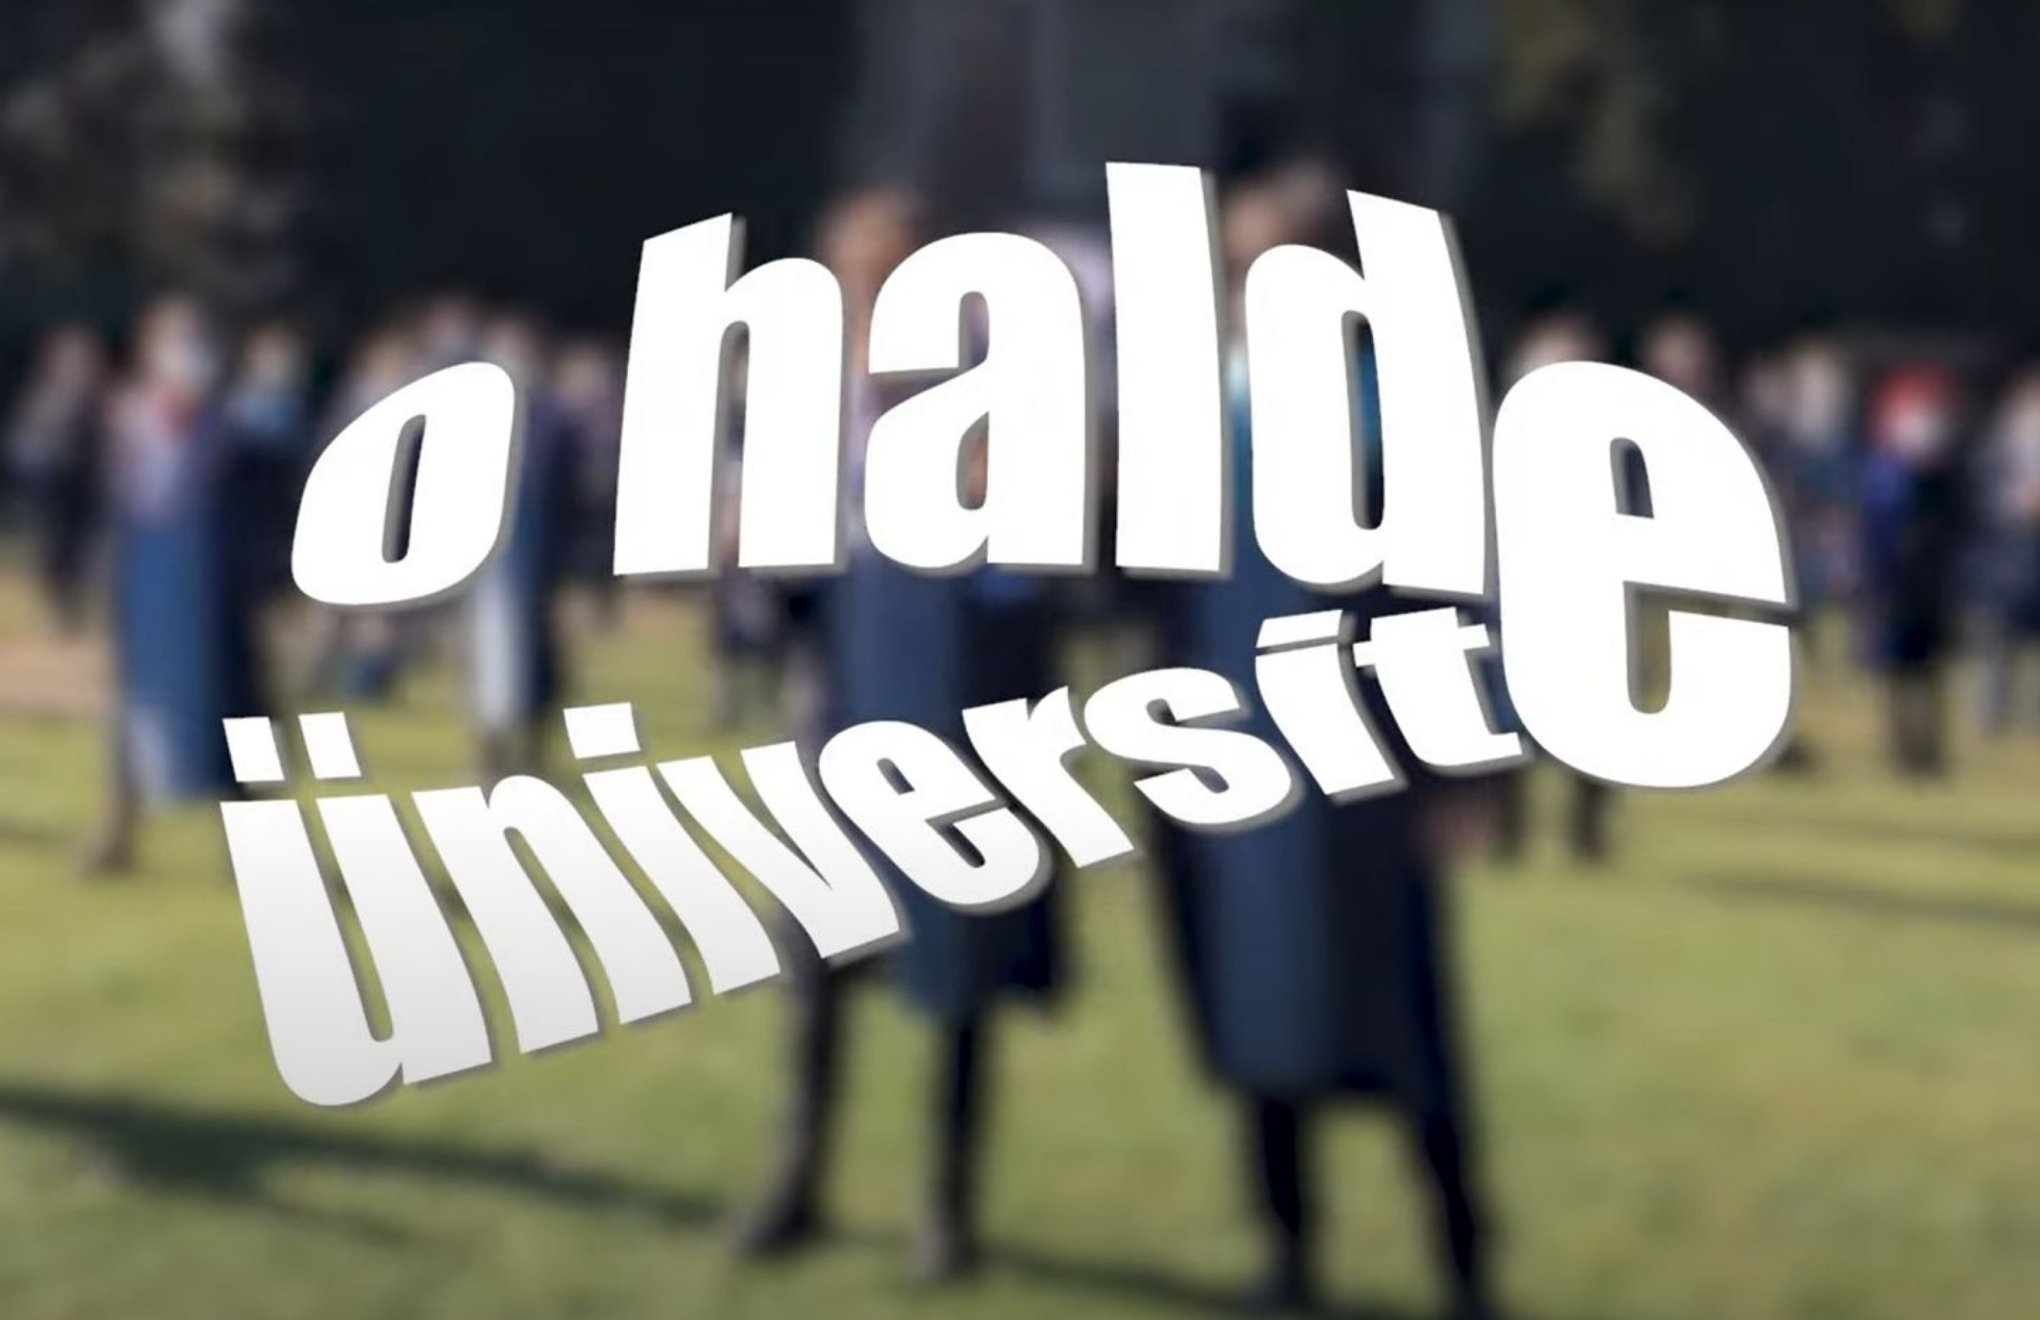 Monokritik’in 2. videosu “O Halde Üniversite” yayında